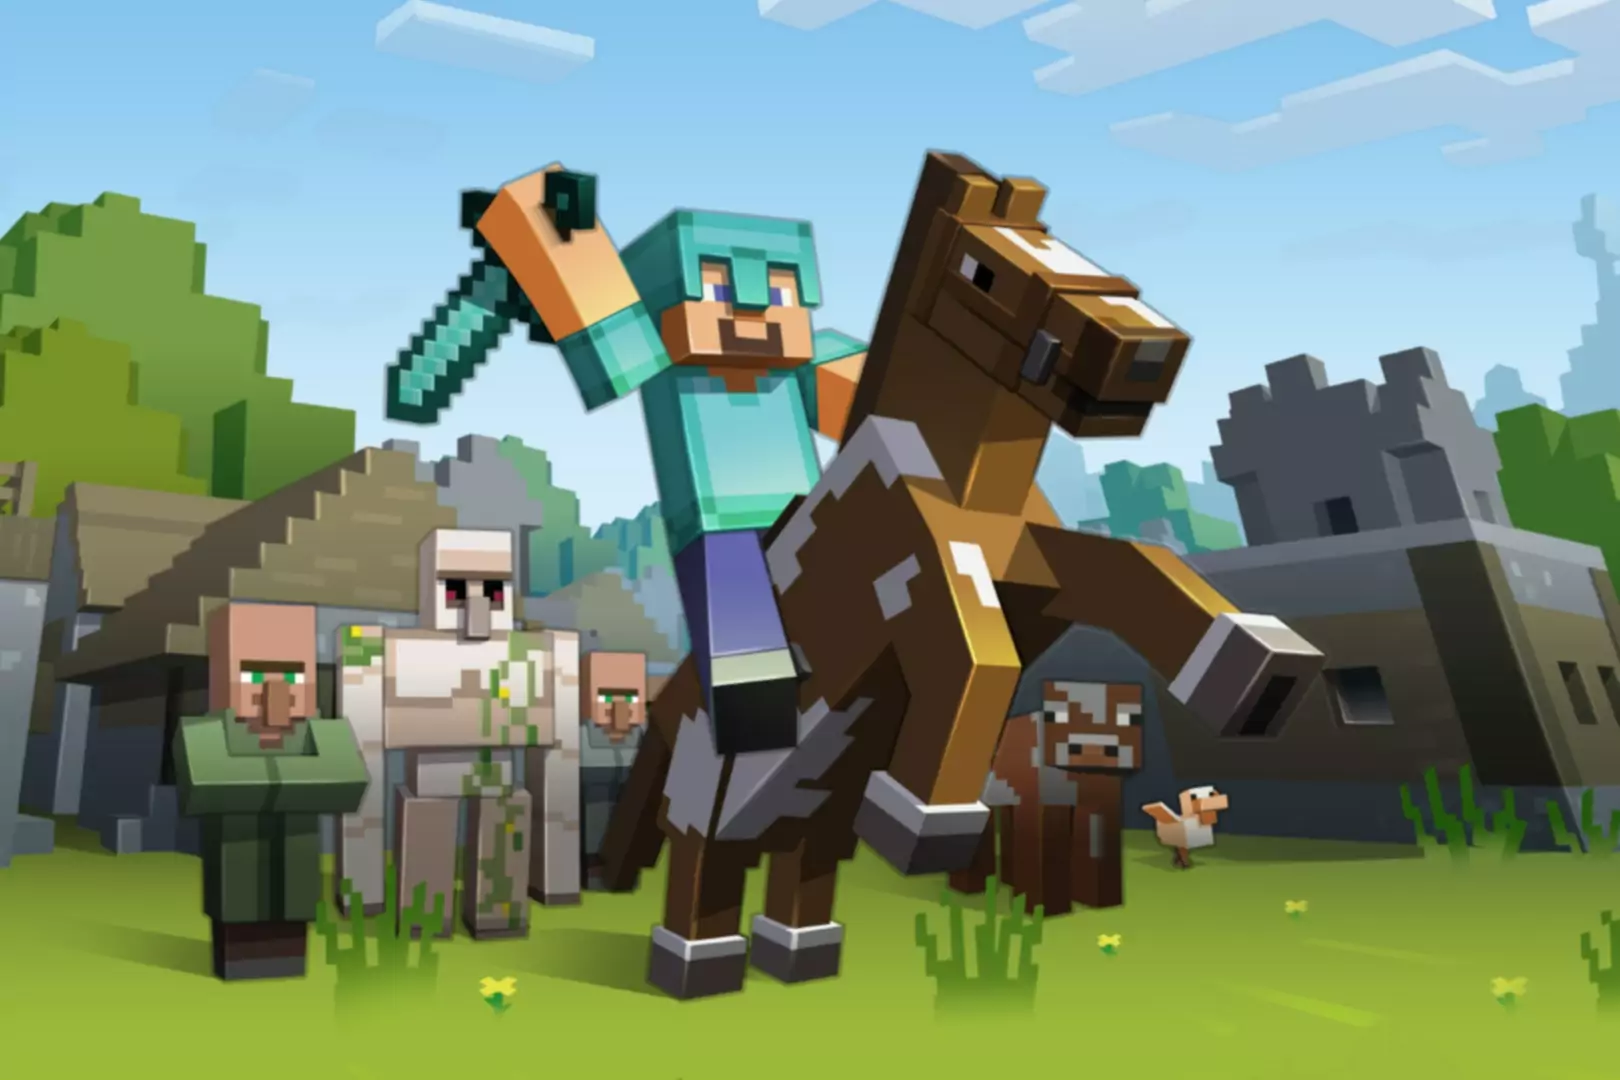 Skærmbillede af Minecraft-spil med en figur, der rider på en hest og vifter med et sværd